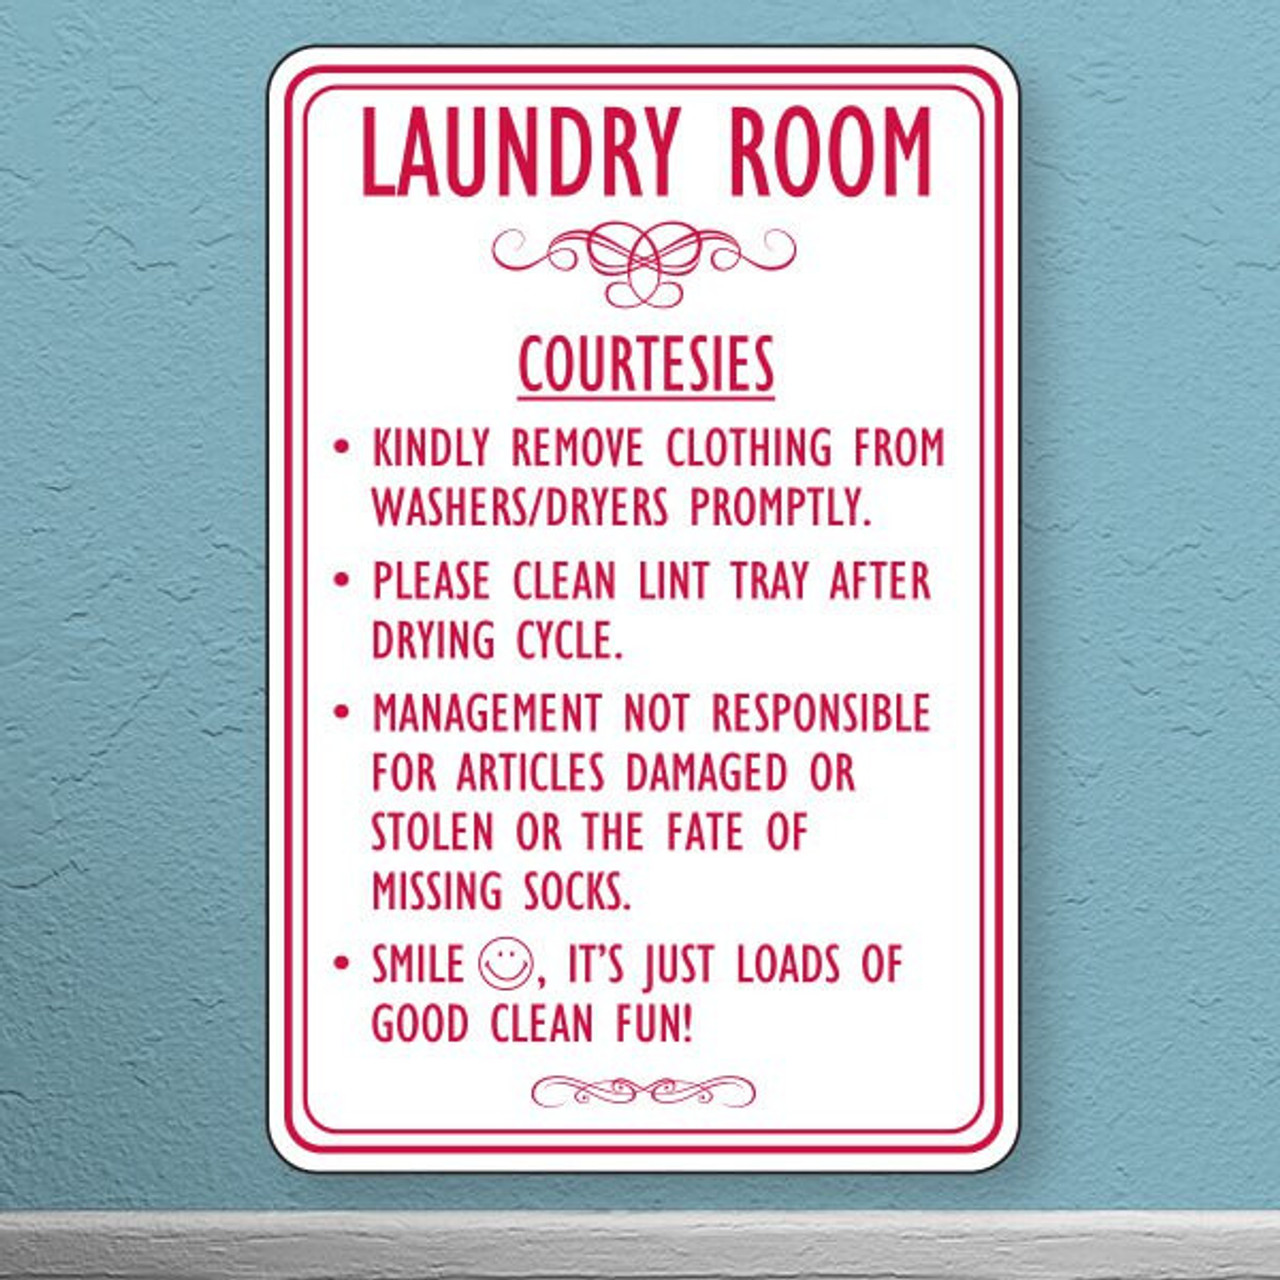 12"x18" Laundry Room Styrene Sign